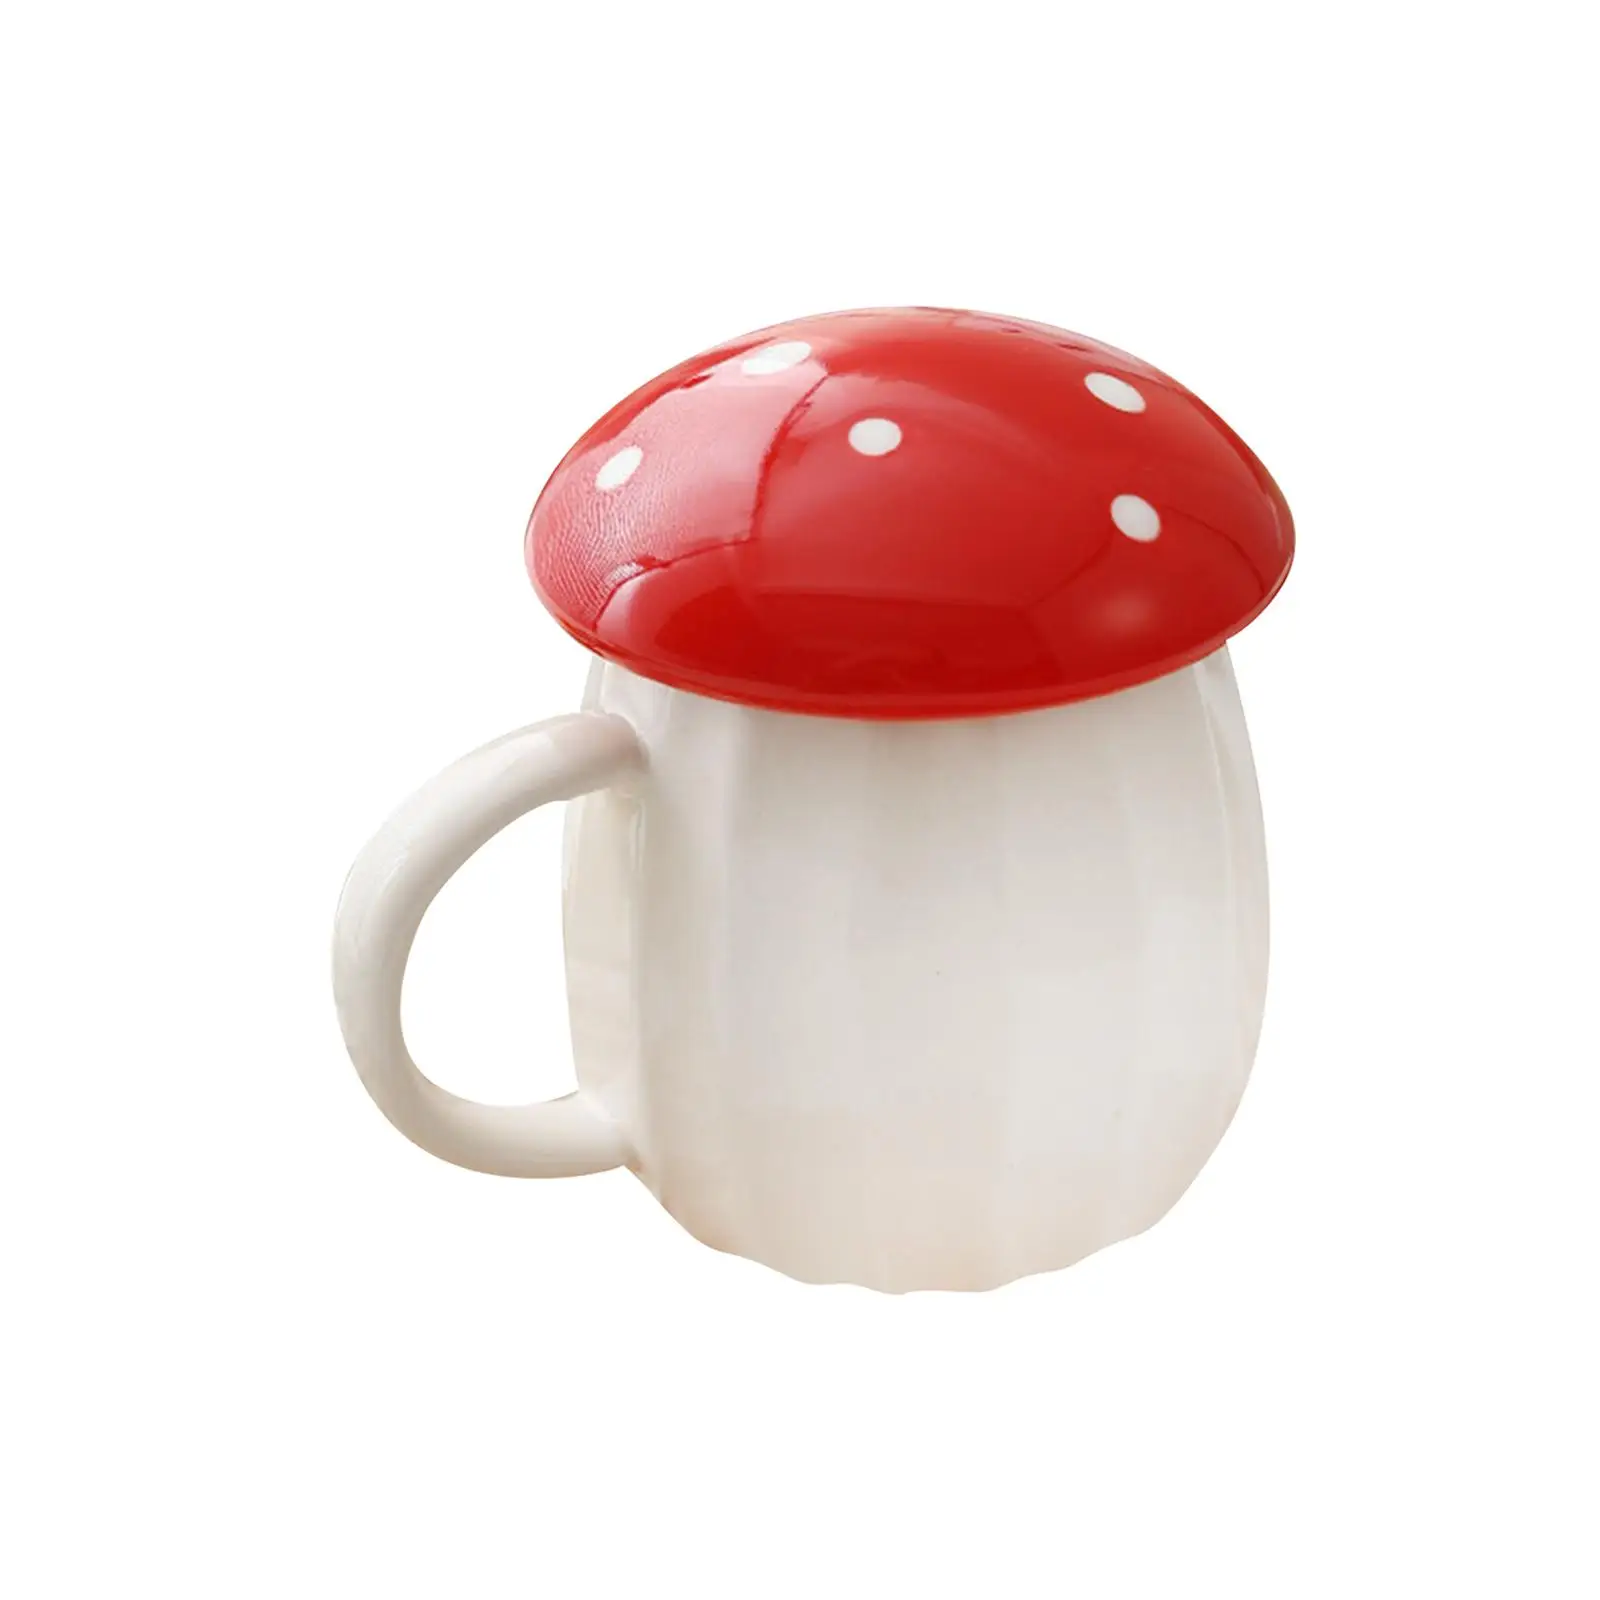 Cute Mushroom Cup Mug Gift Water Bottle Ceramic Cup Thickened Handle Drinkware for Tea Milk Orange Juice Office Household